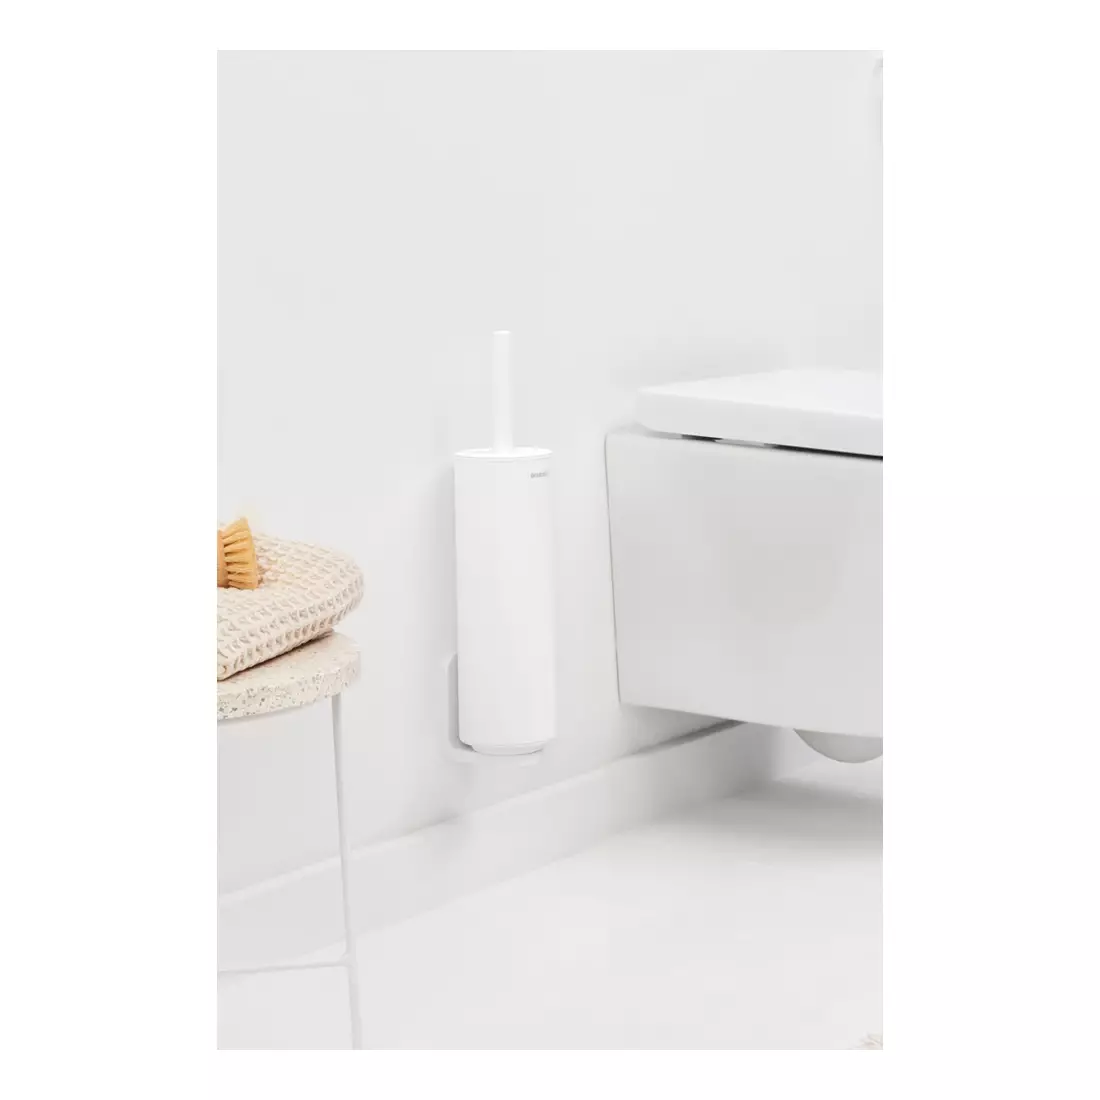 BRABANTIA MINDSET toilet brush in housing, white